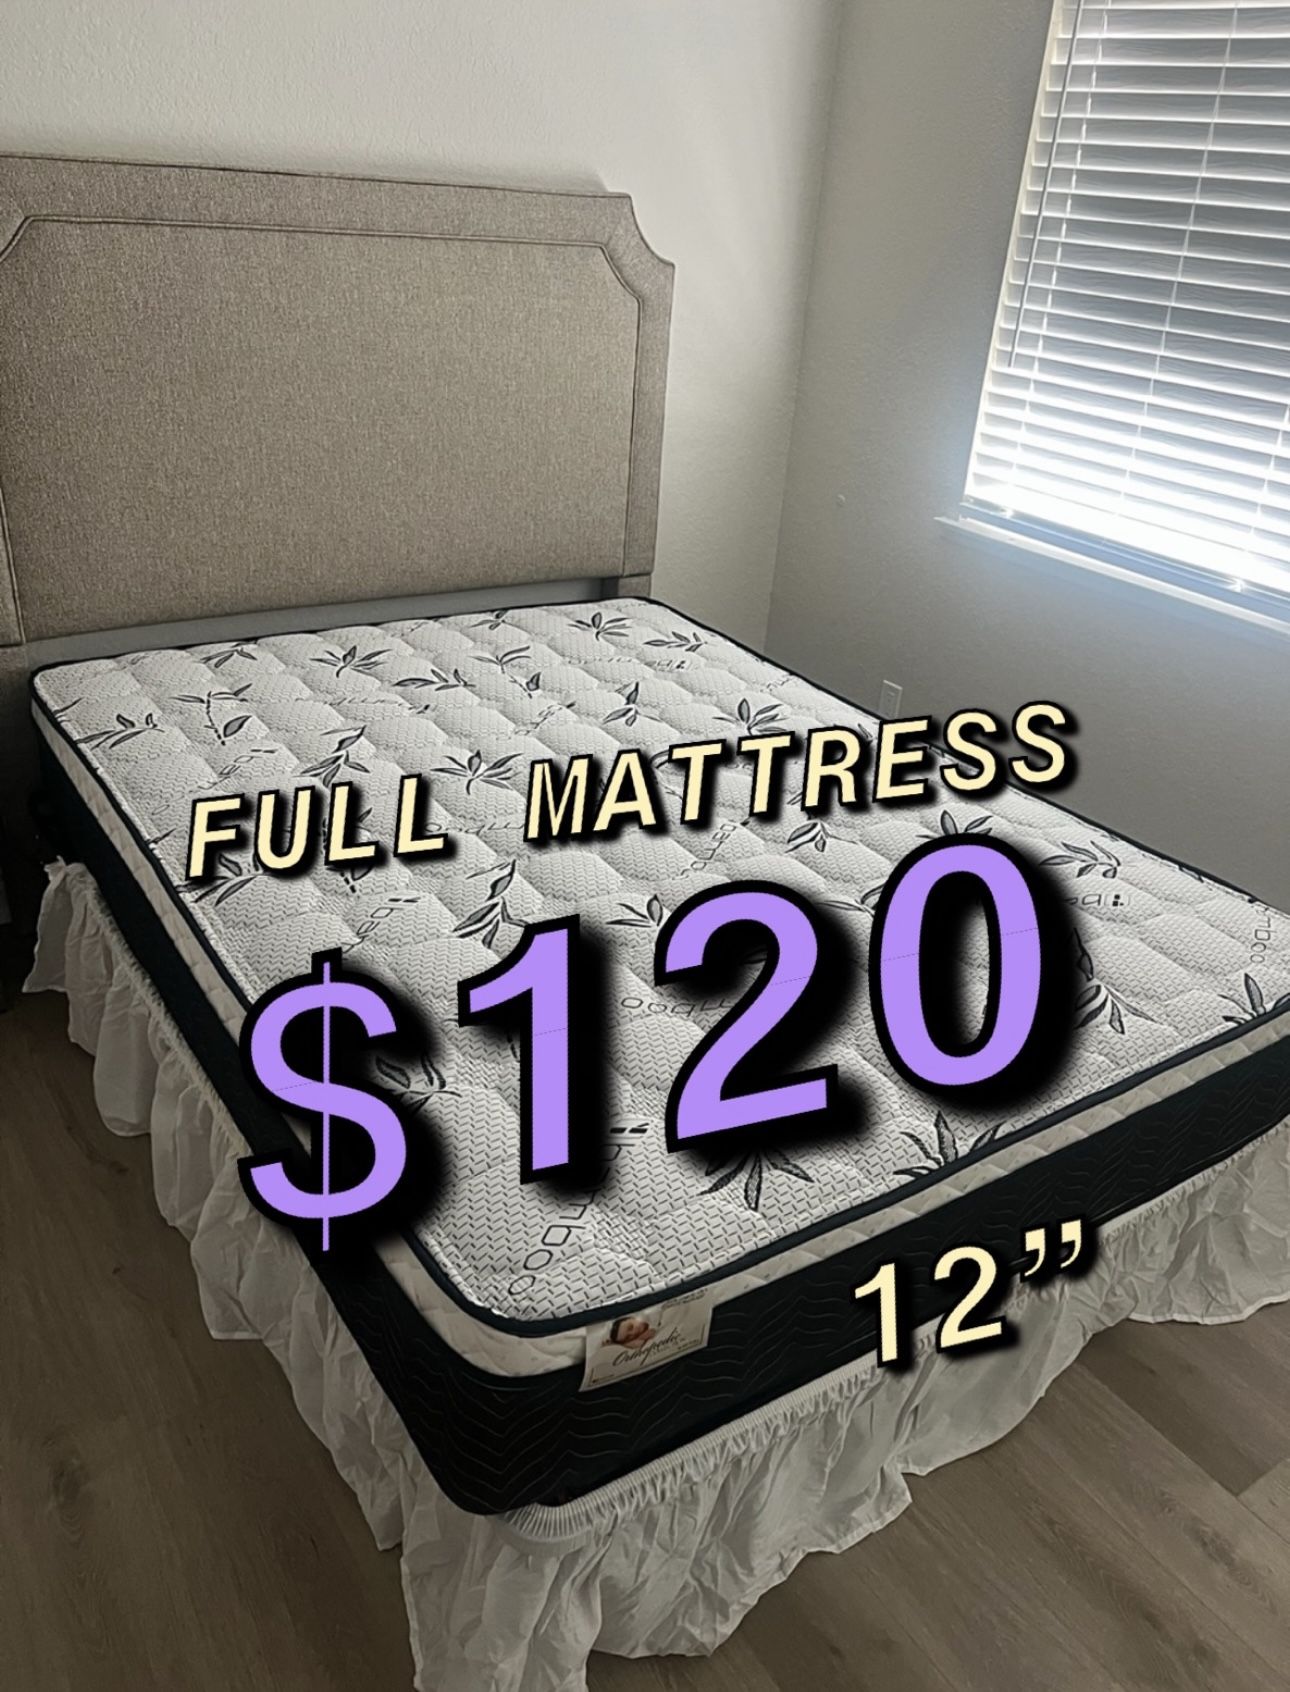 New Full Matttress $120